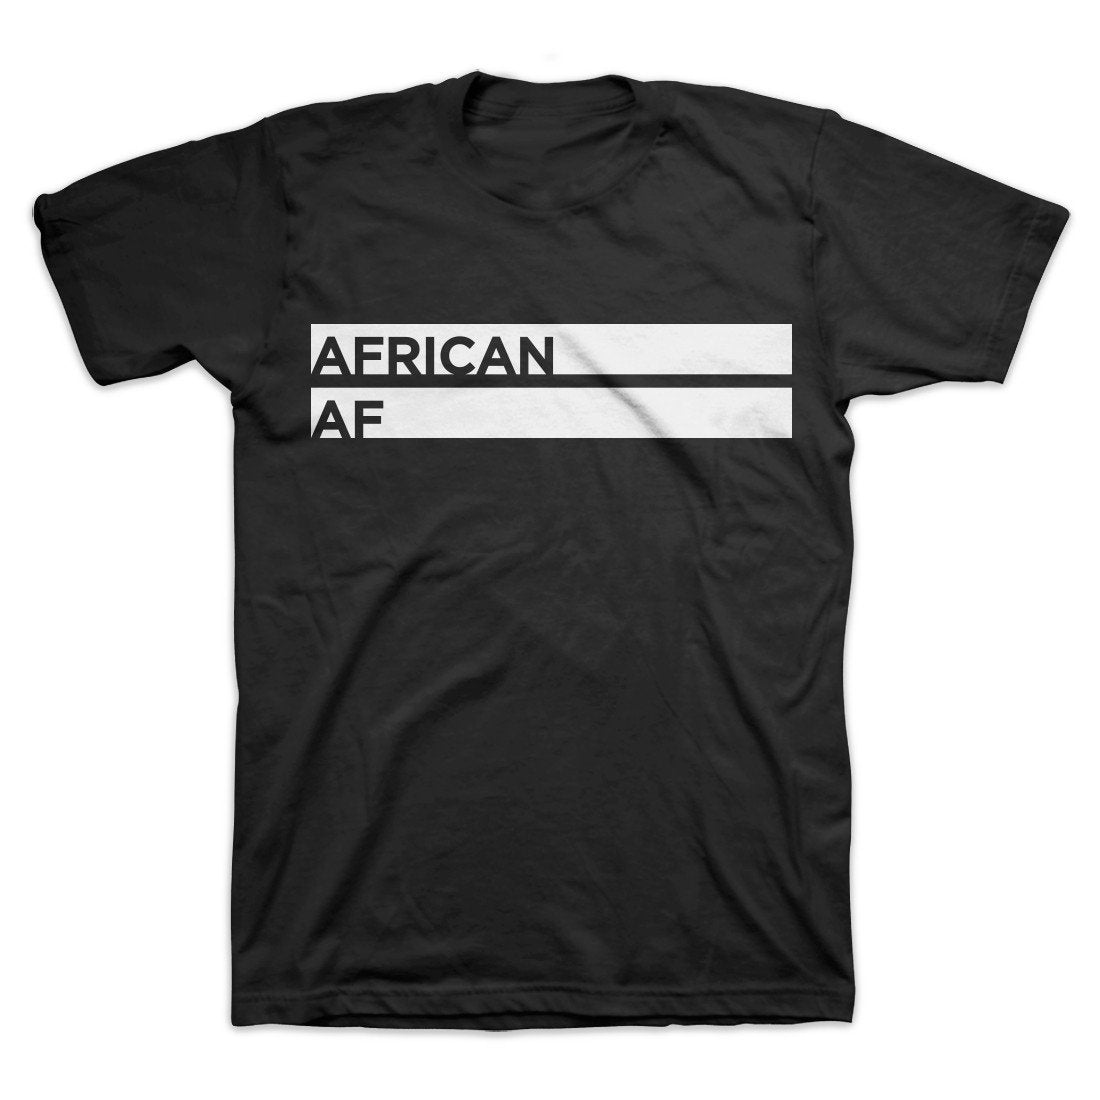 African AF T-Shirt Black